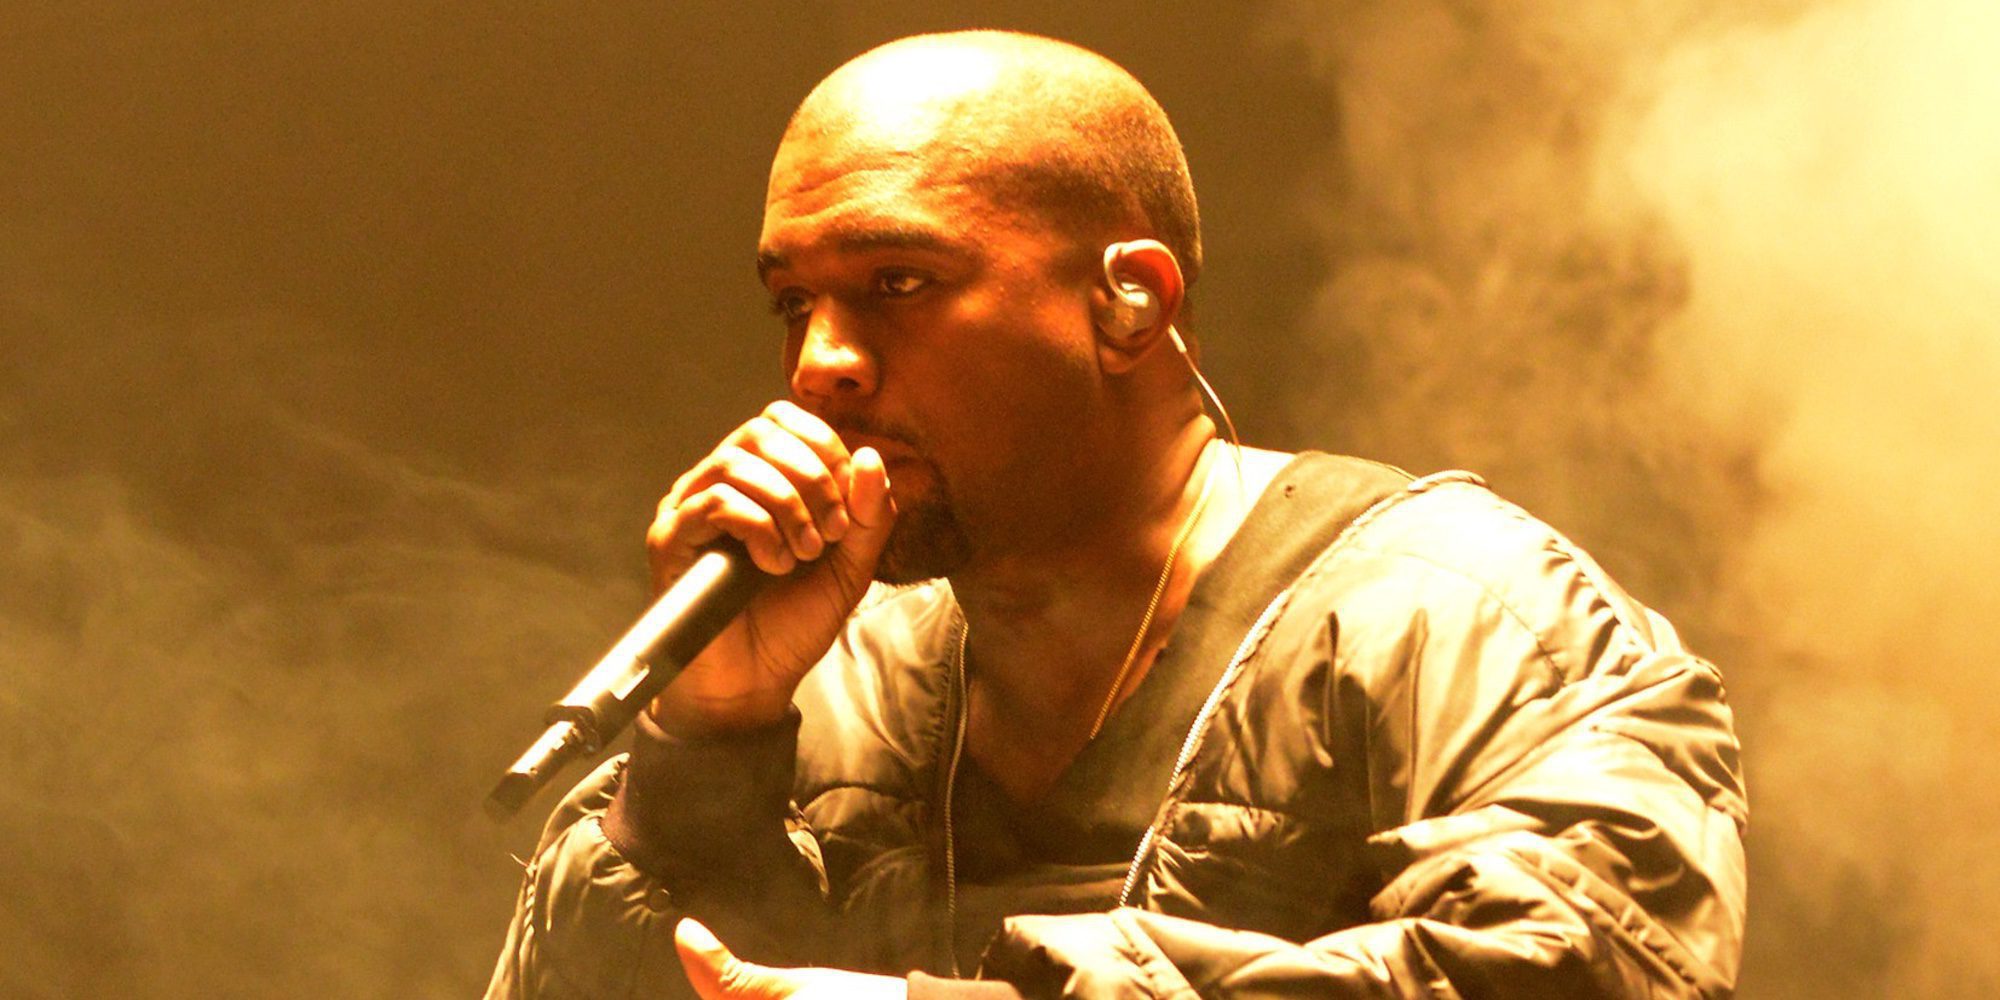 Los 20 datos que tienes que conocer de Kanye West, el rapero que se casó con Kim Kardashian